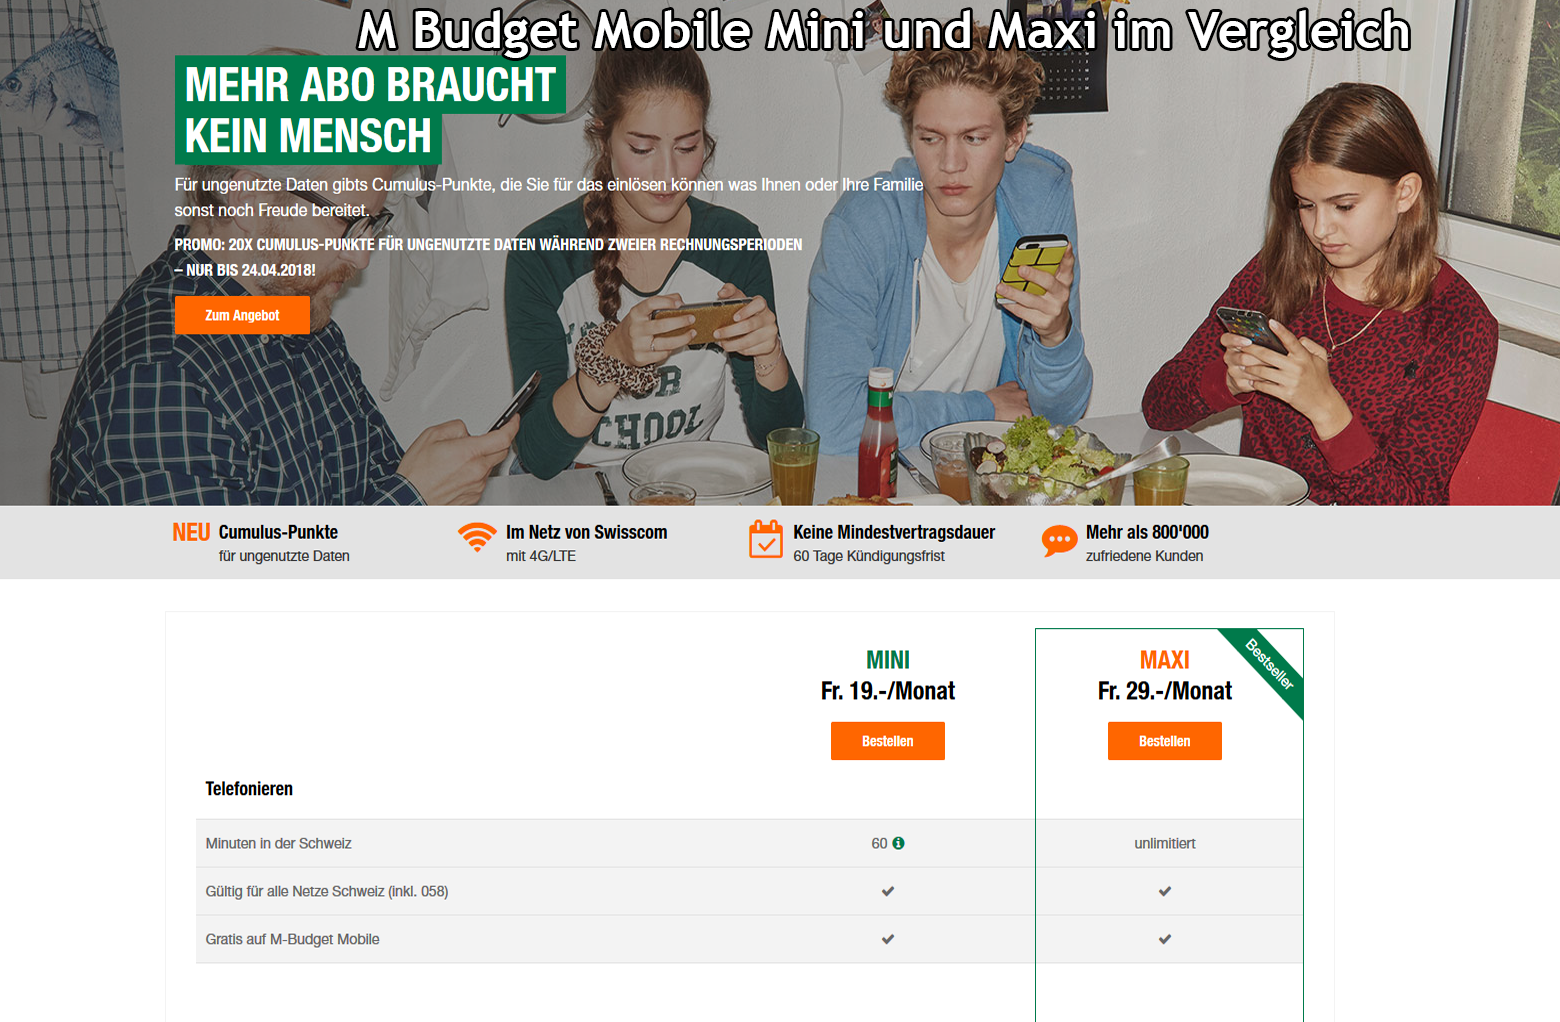 Wie gut sind die neuen M-Budget Mobile Mini und Maxi Abos im Vergleich?